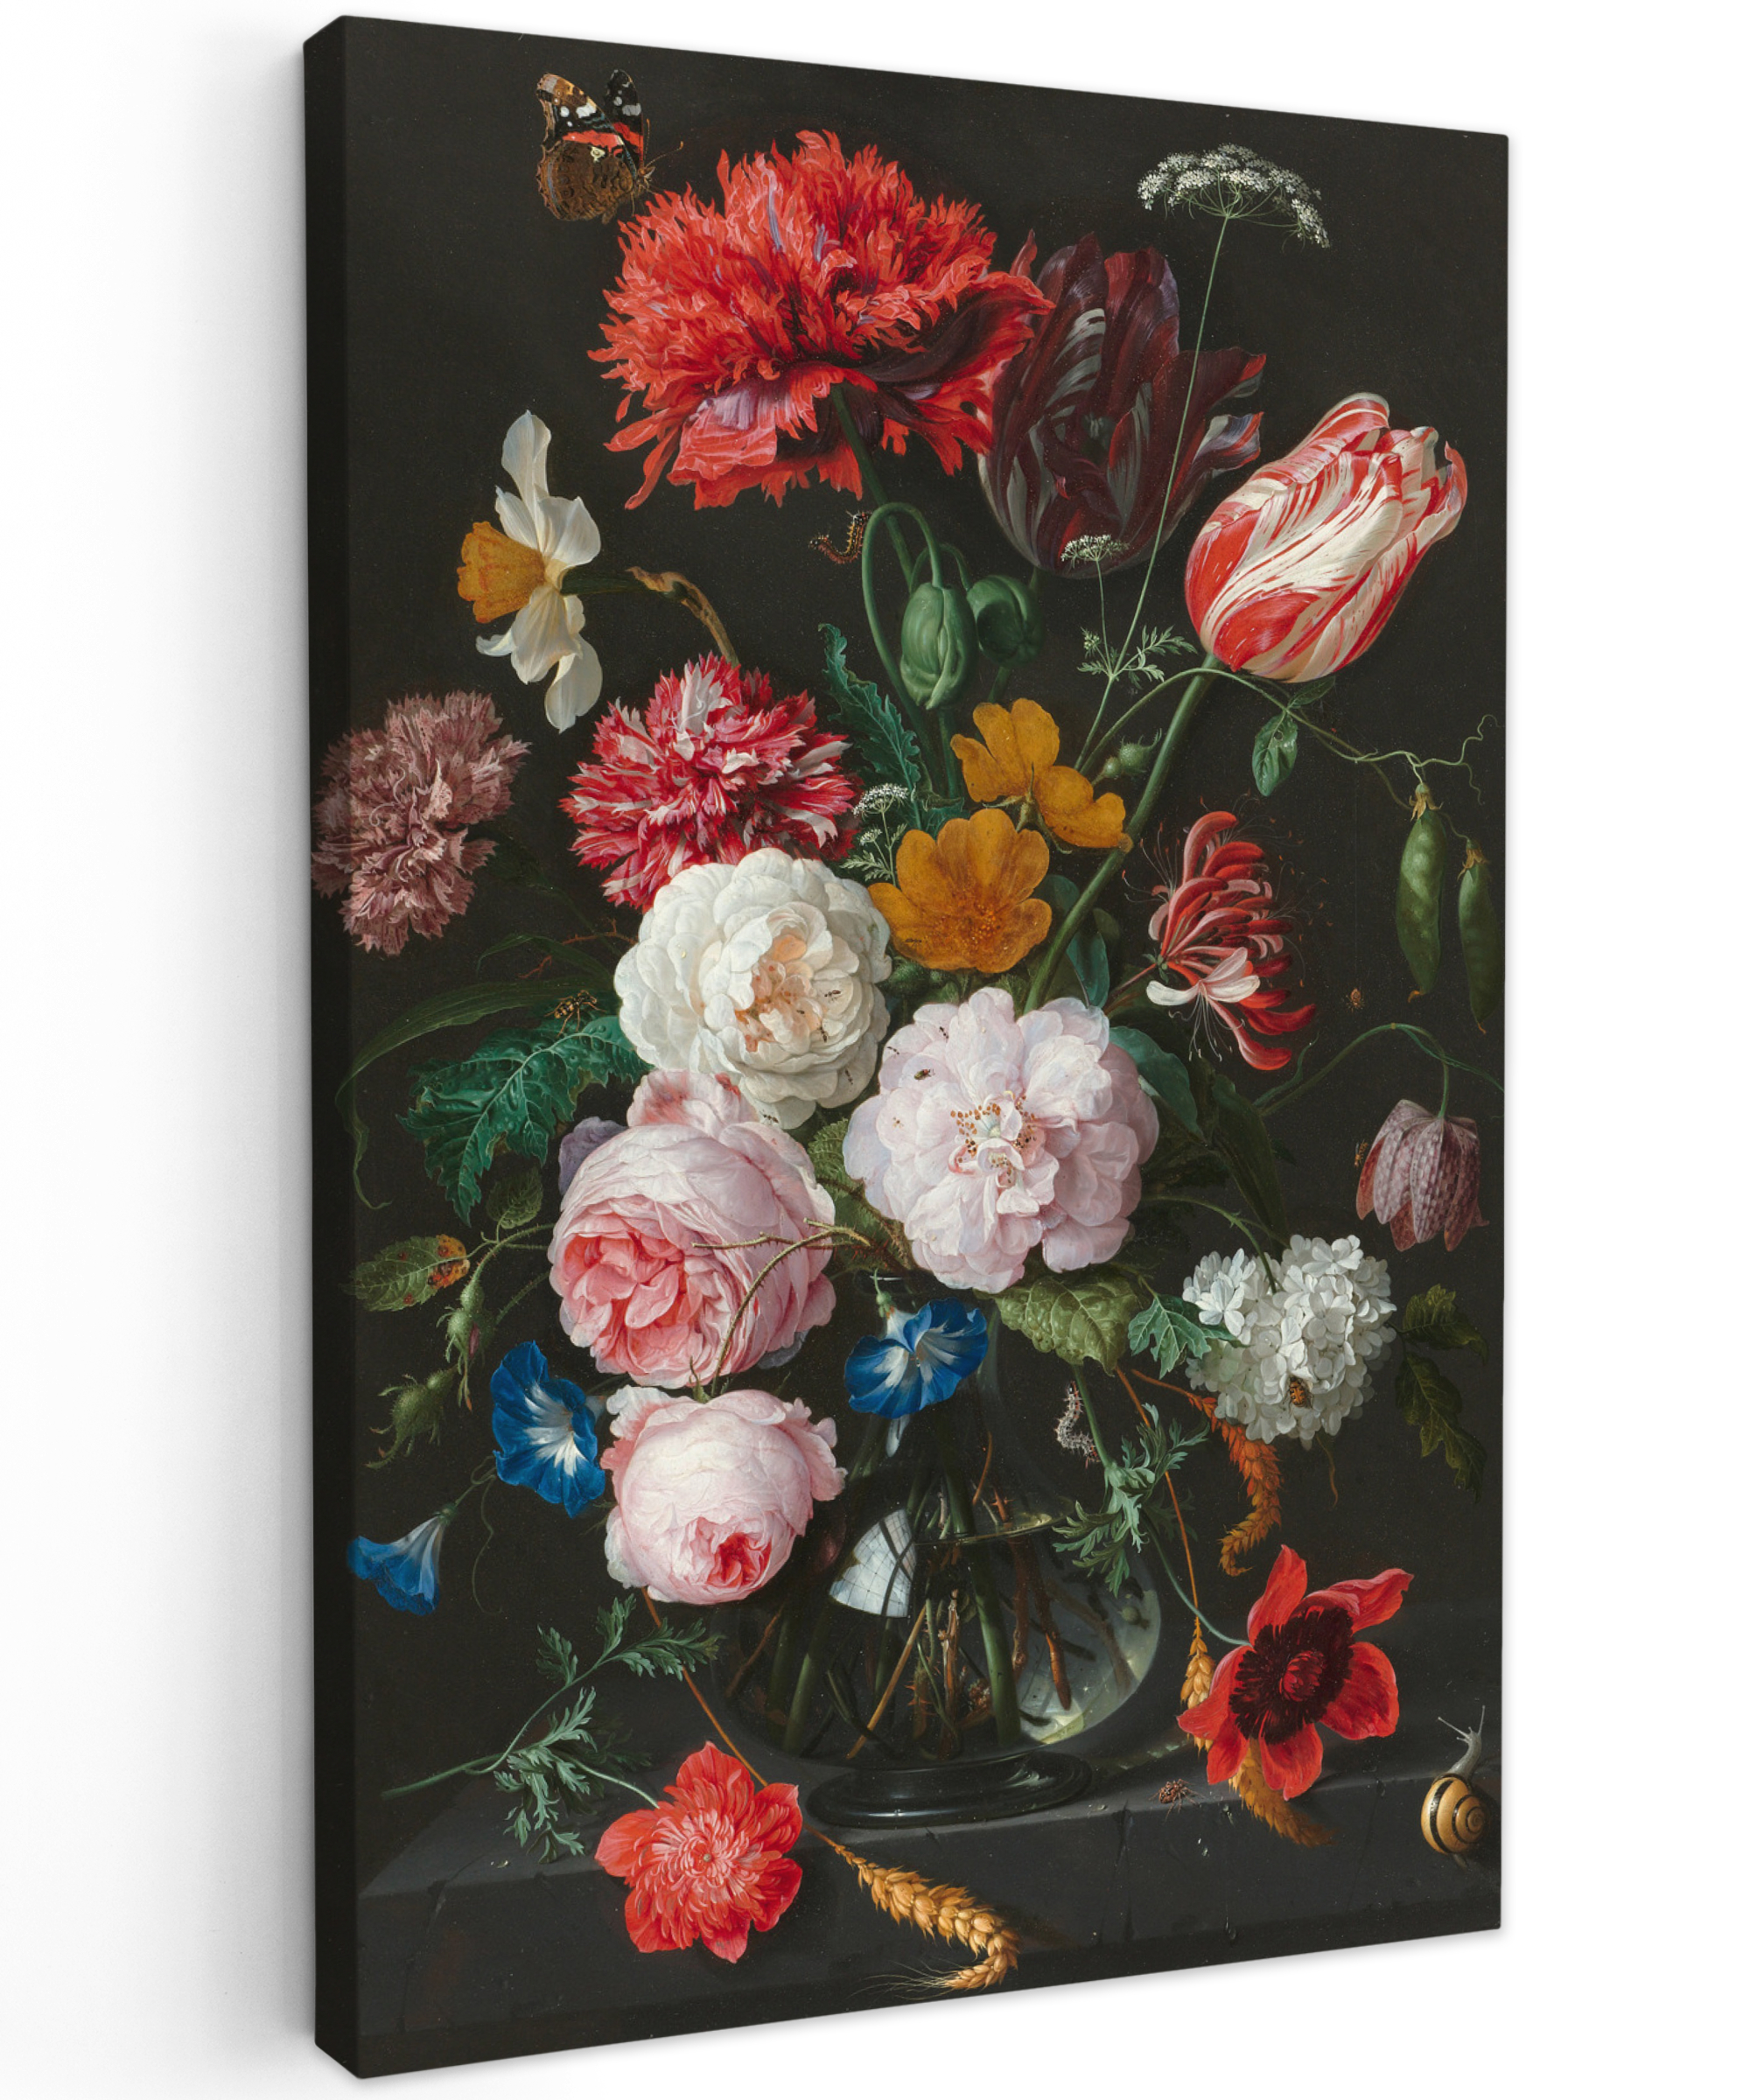 Canvas schilderij - Stilleven met bloemen in een glazen vaas - Schilderij van Jan Davidsz. de Heem